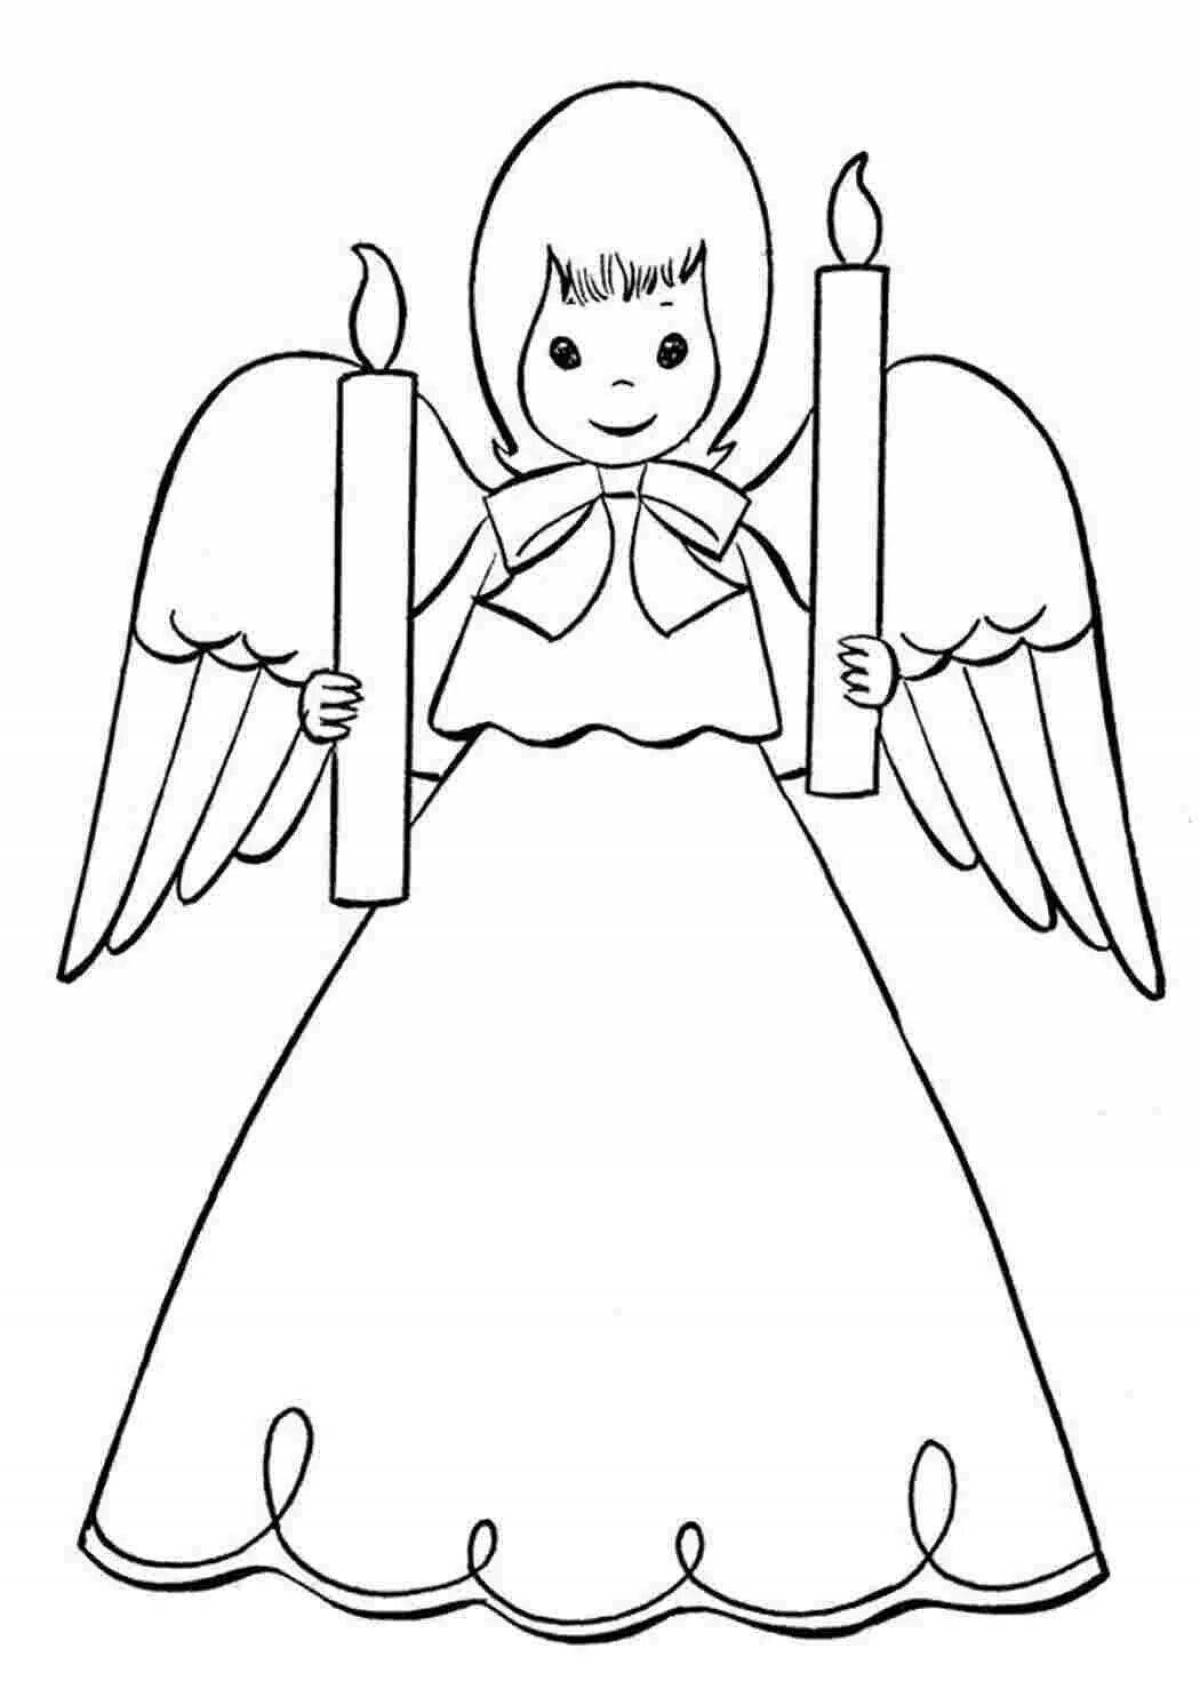 Светящаяся раскраска ангел с крыльями для детей